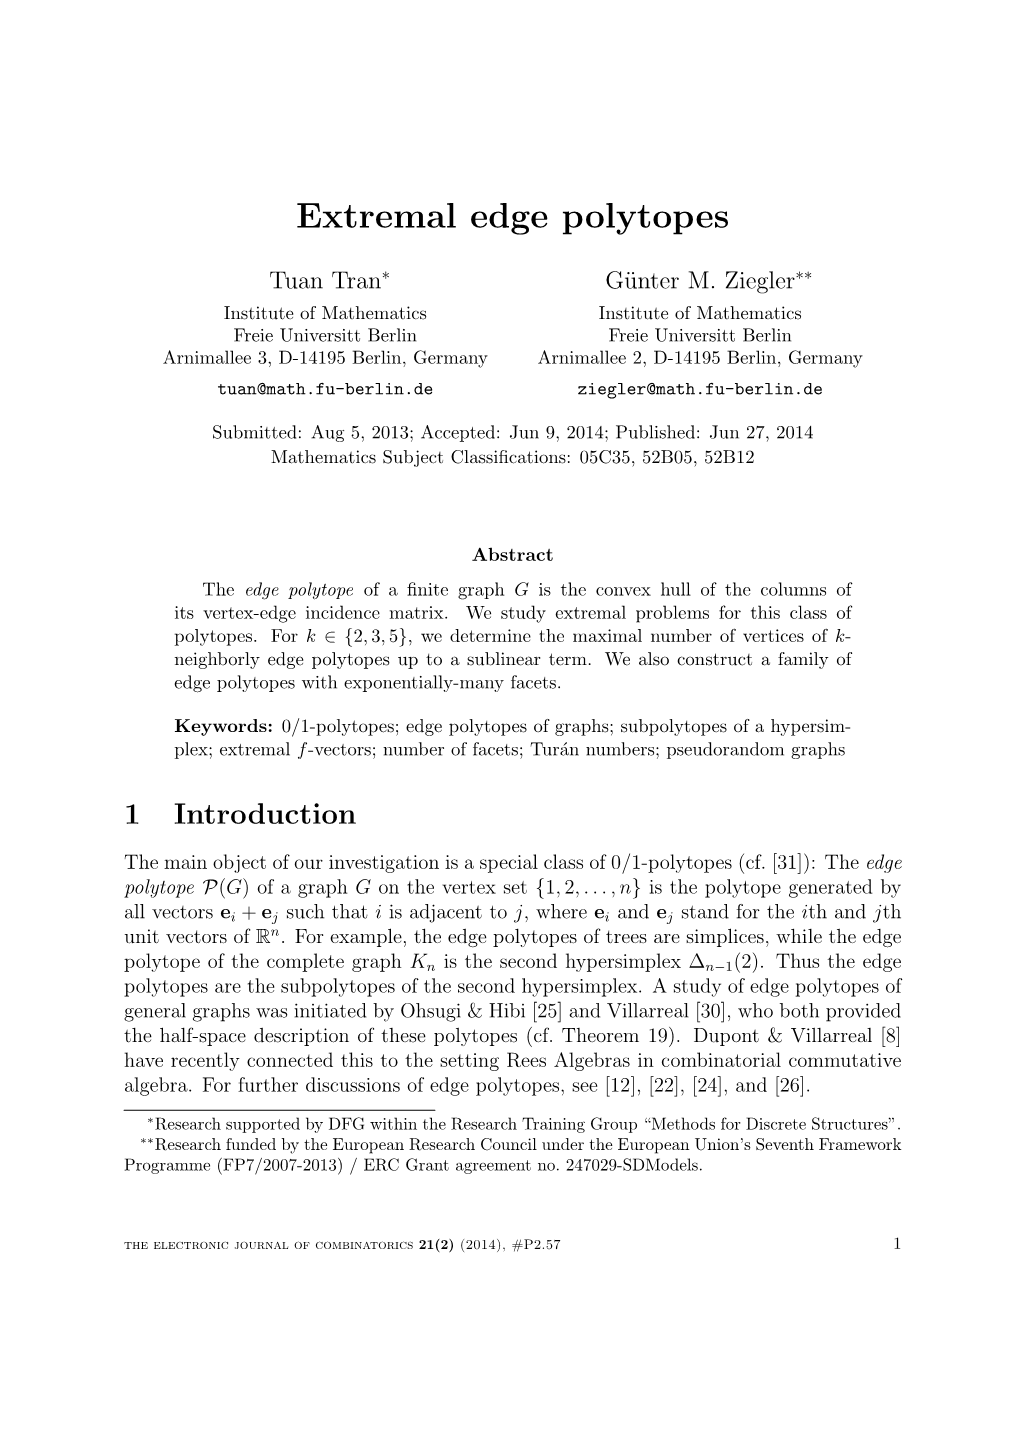 Extremal Edge Polytopes